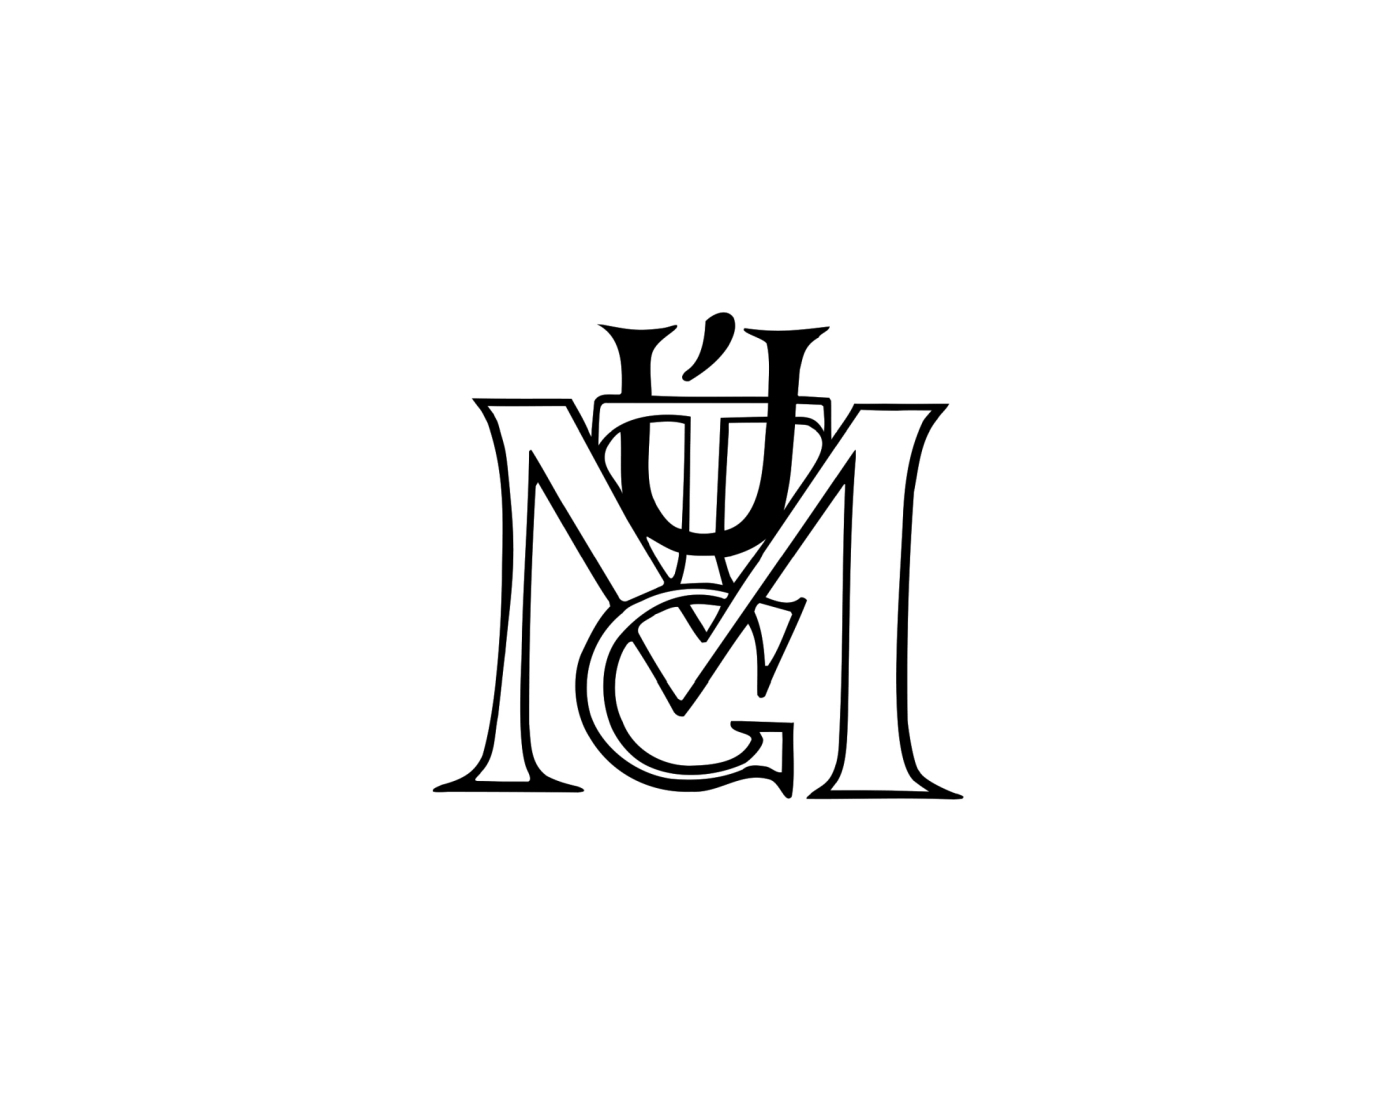 UTGM logo